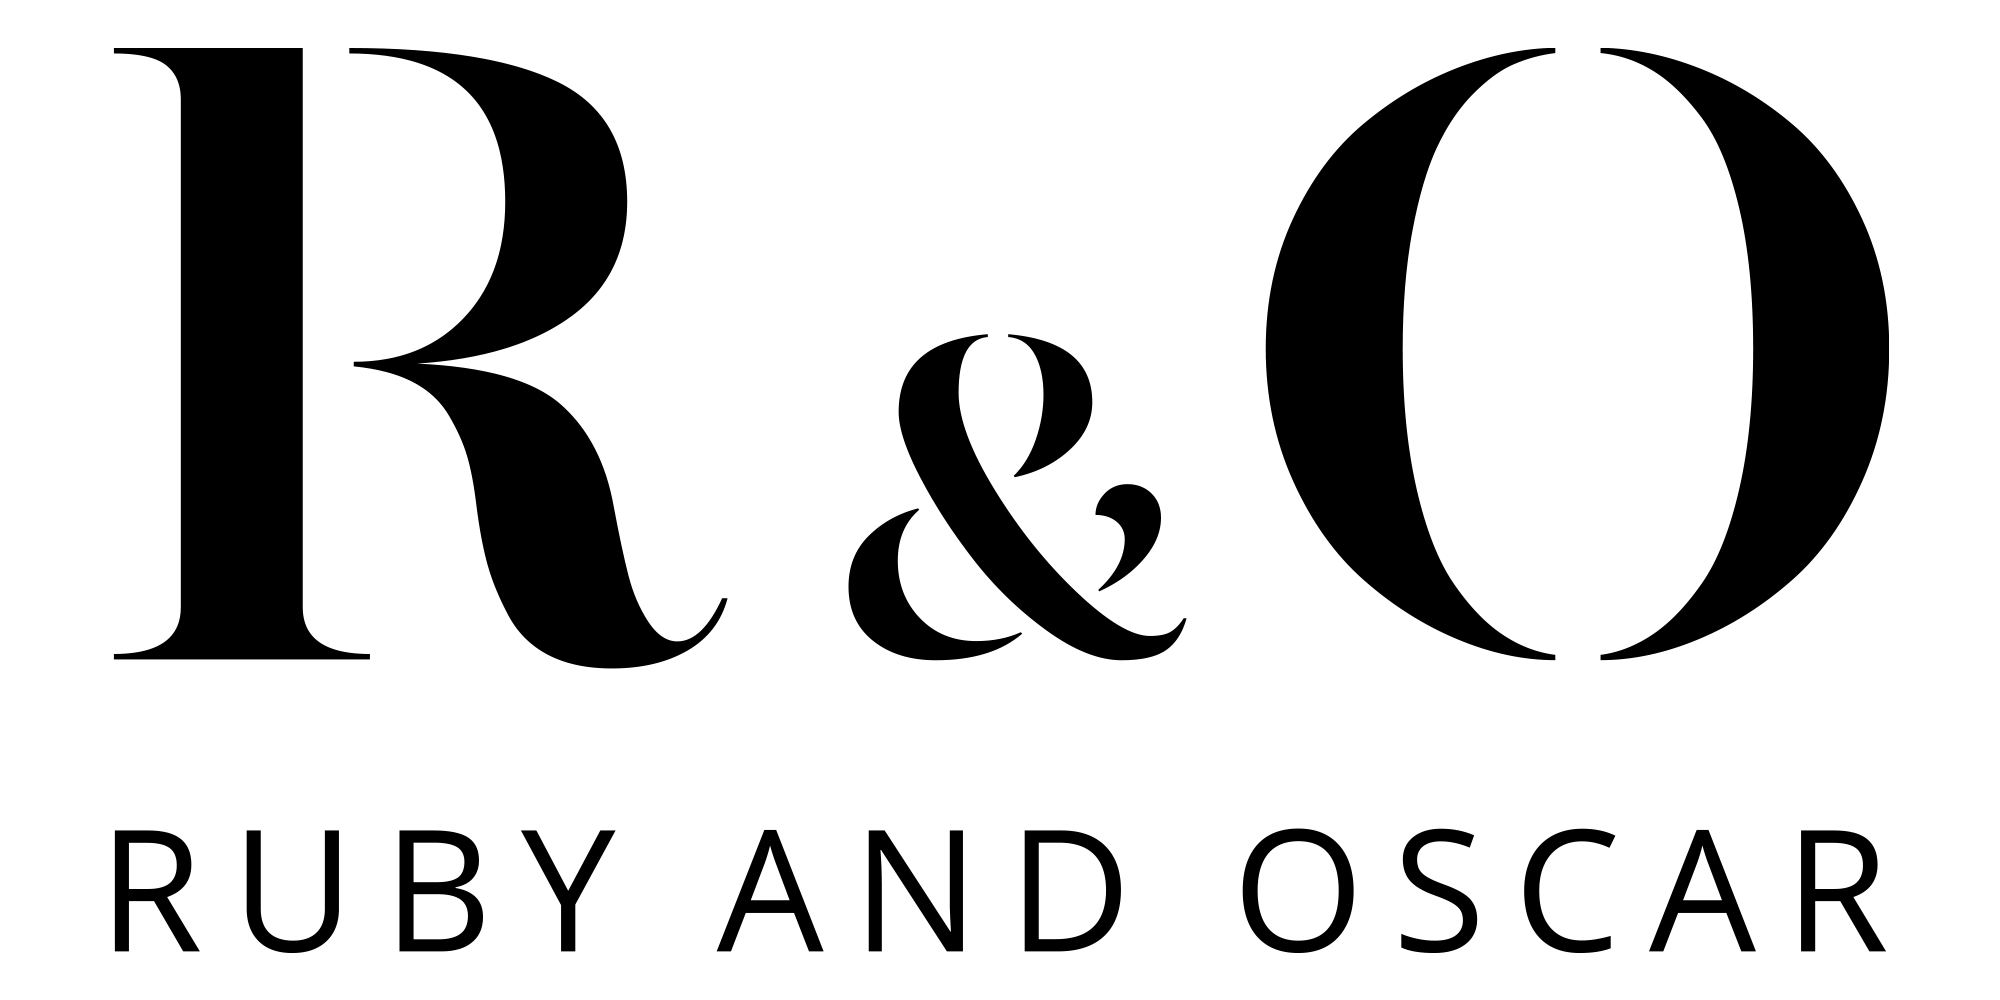 Ruby & Oscar logo